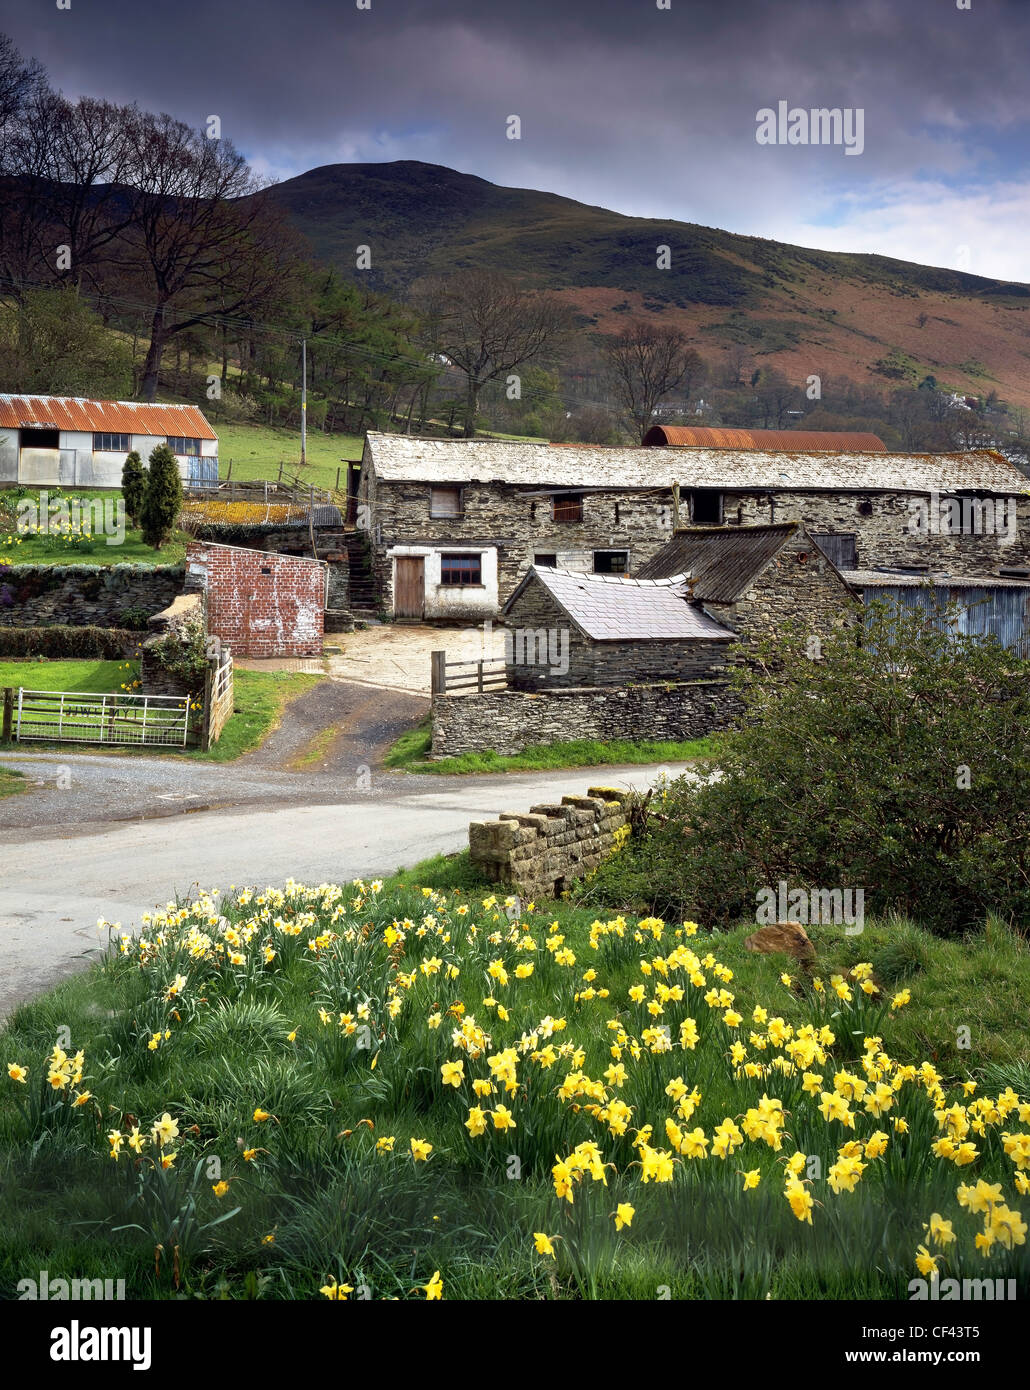 Giunchiglie fiore dal lato di un piccolo paese di lane e vecchi edifici agricoli in una valle remota nel Galles del Nord. Foto Stock